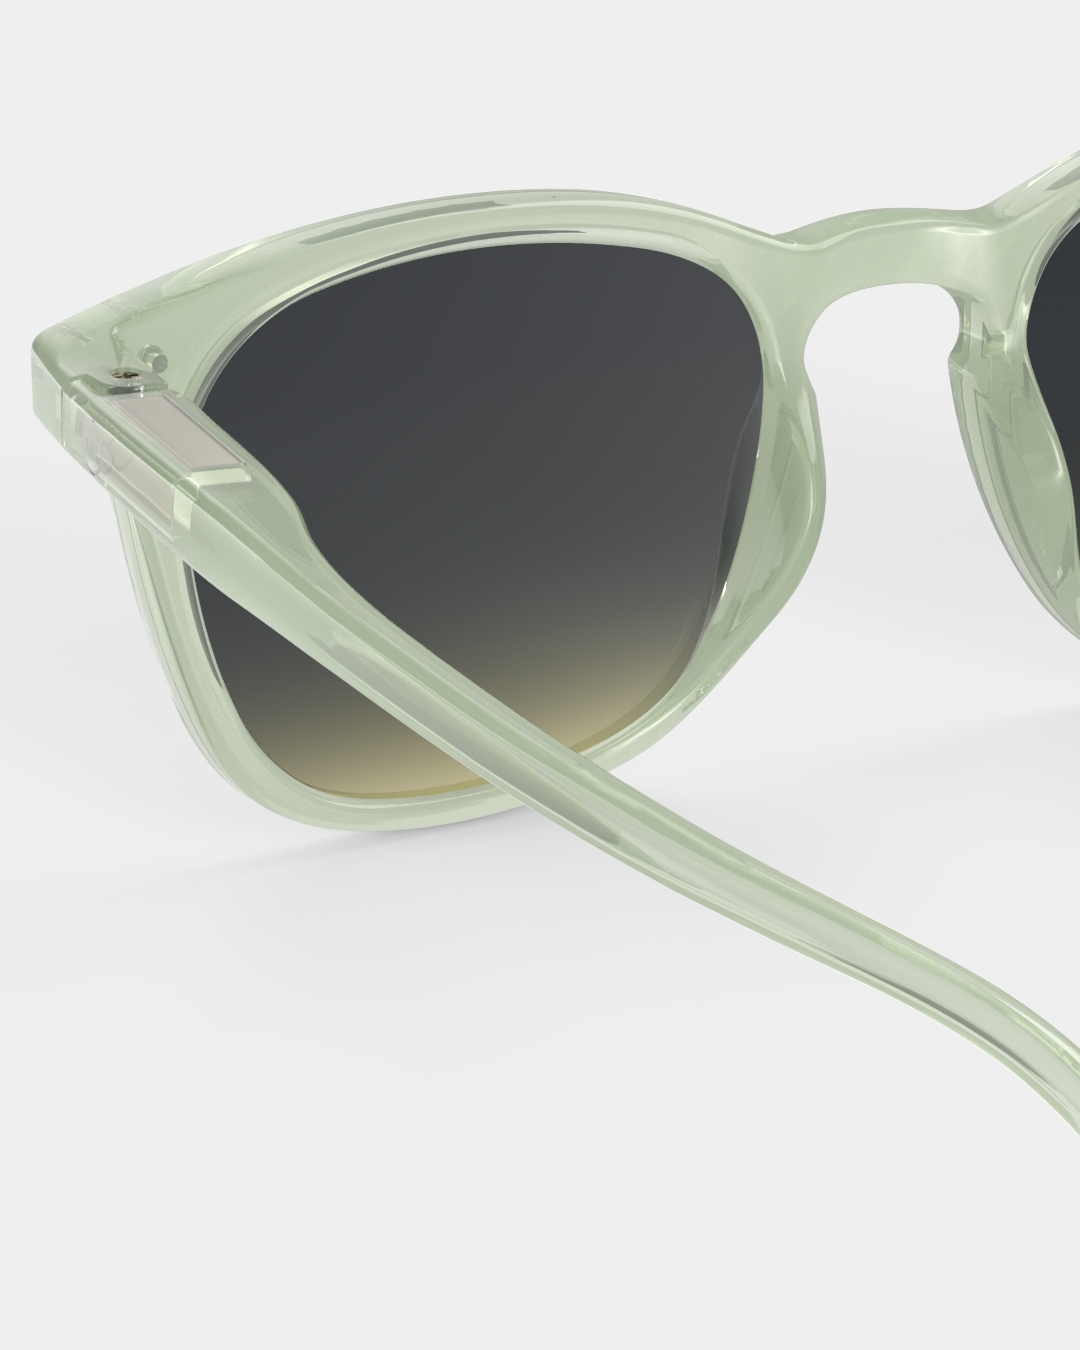 Trendy JUNIOR SUN glasses #e Quiet Green Trapeze - Izipizi